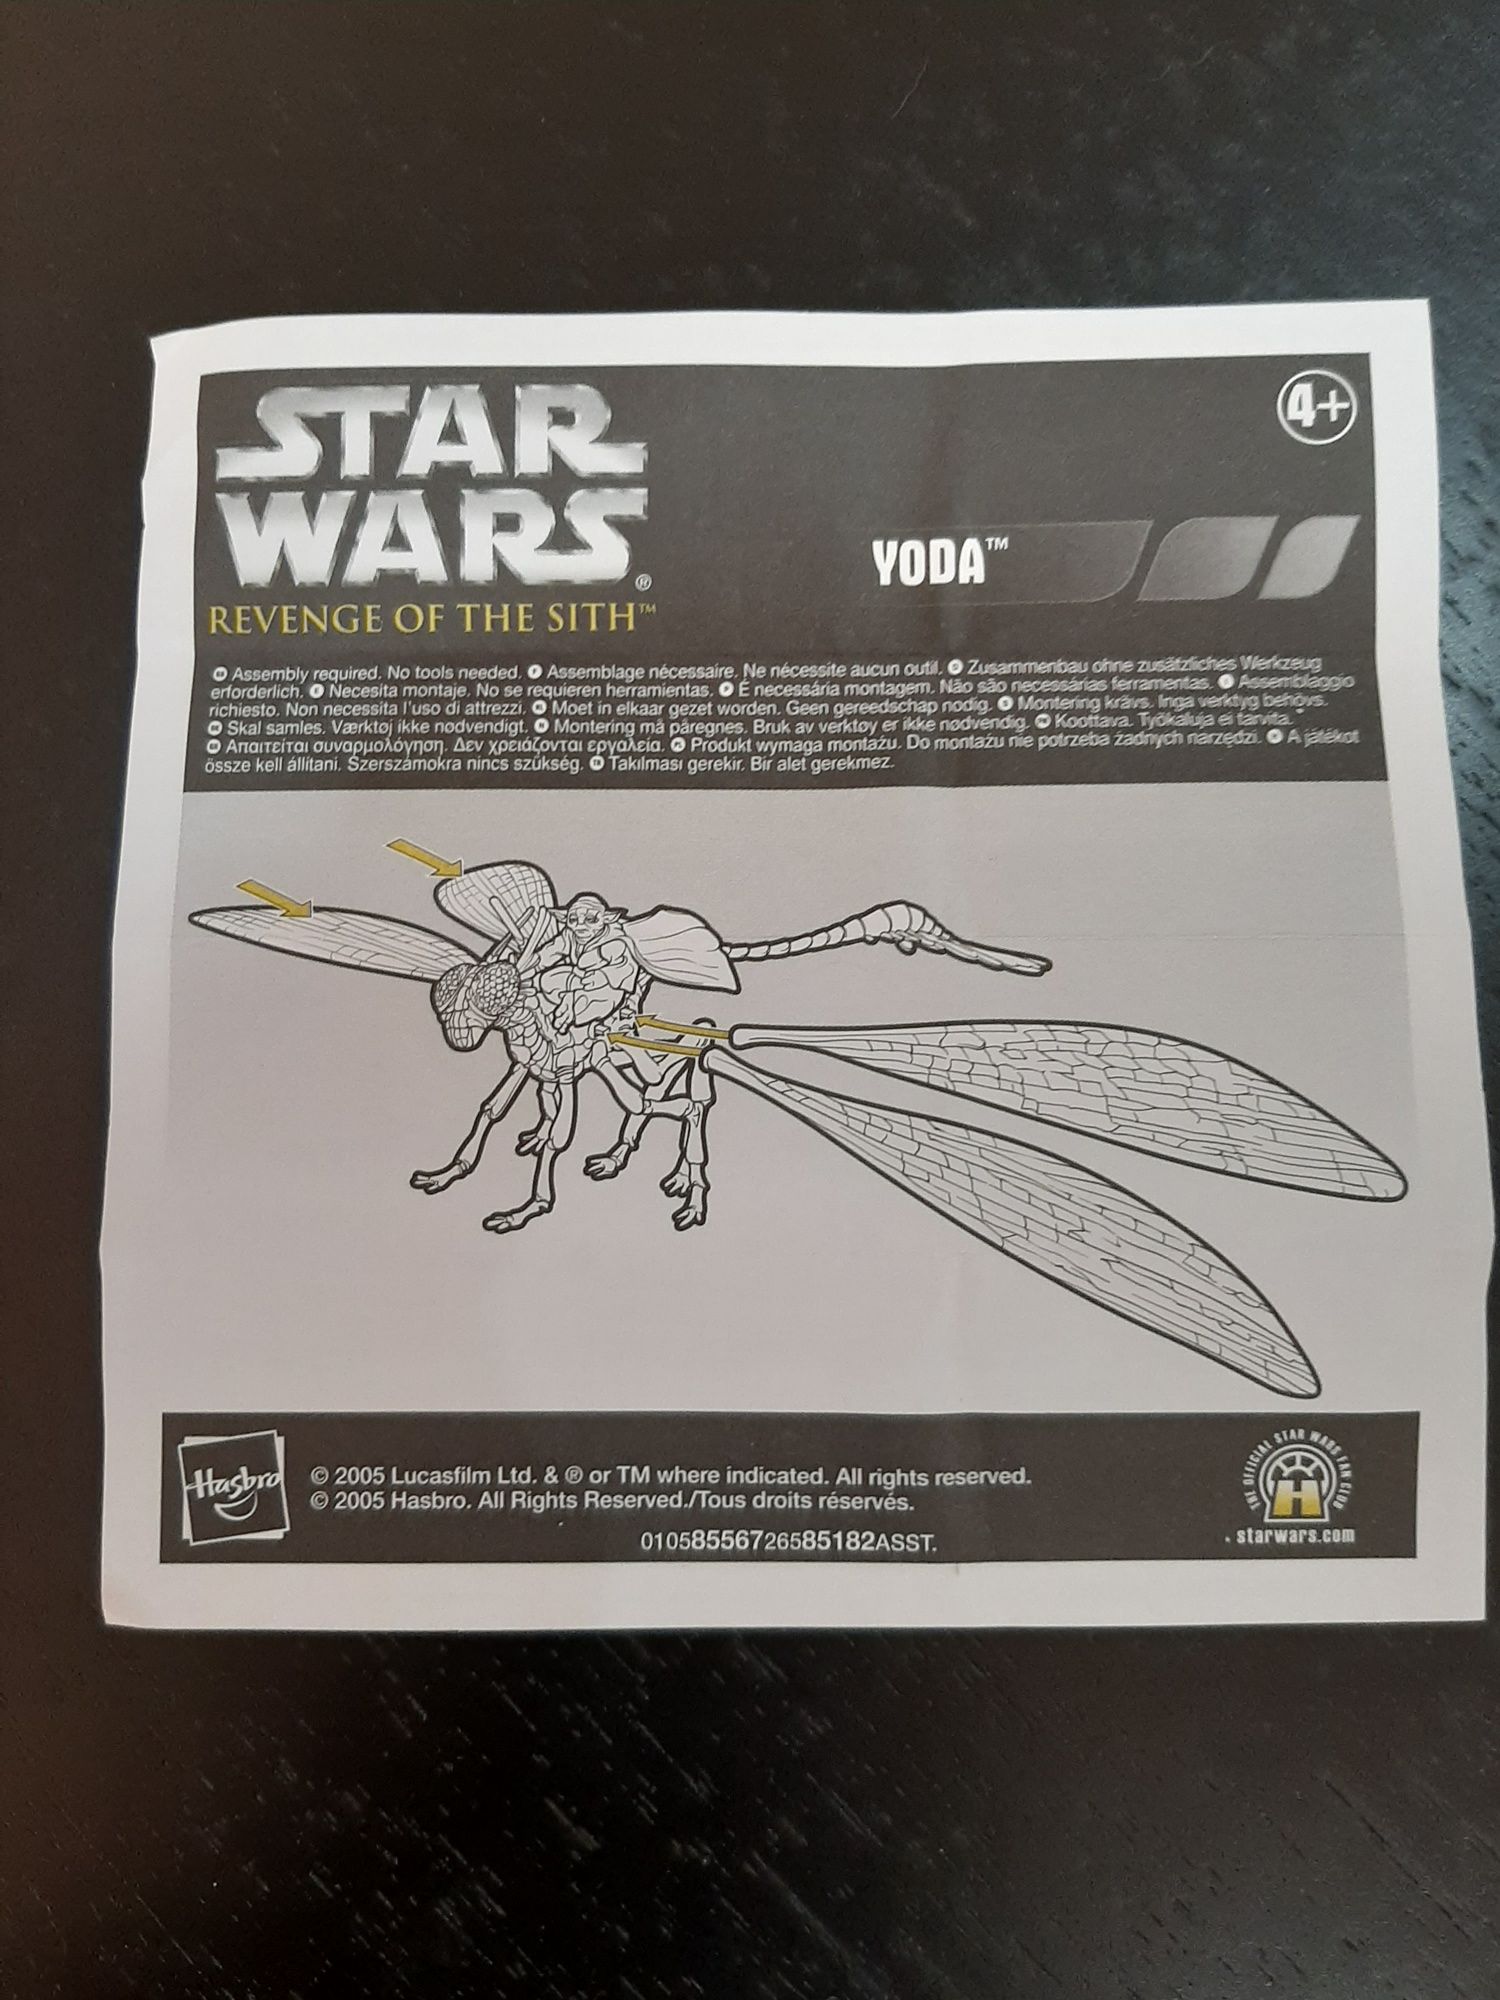 Star Wars - Yoda fly into Battle - Raro